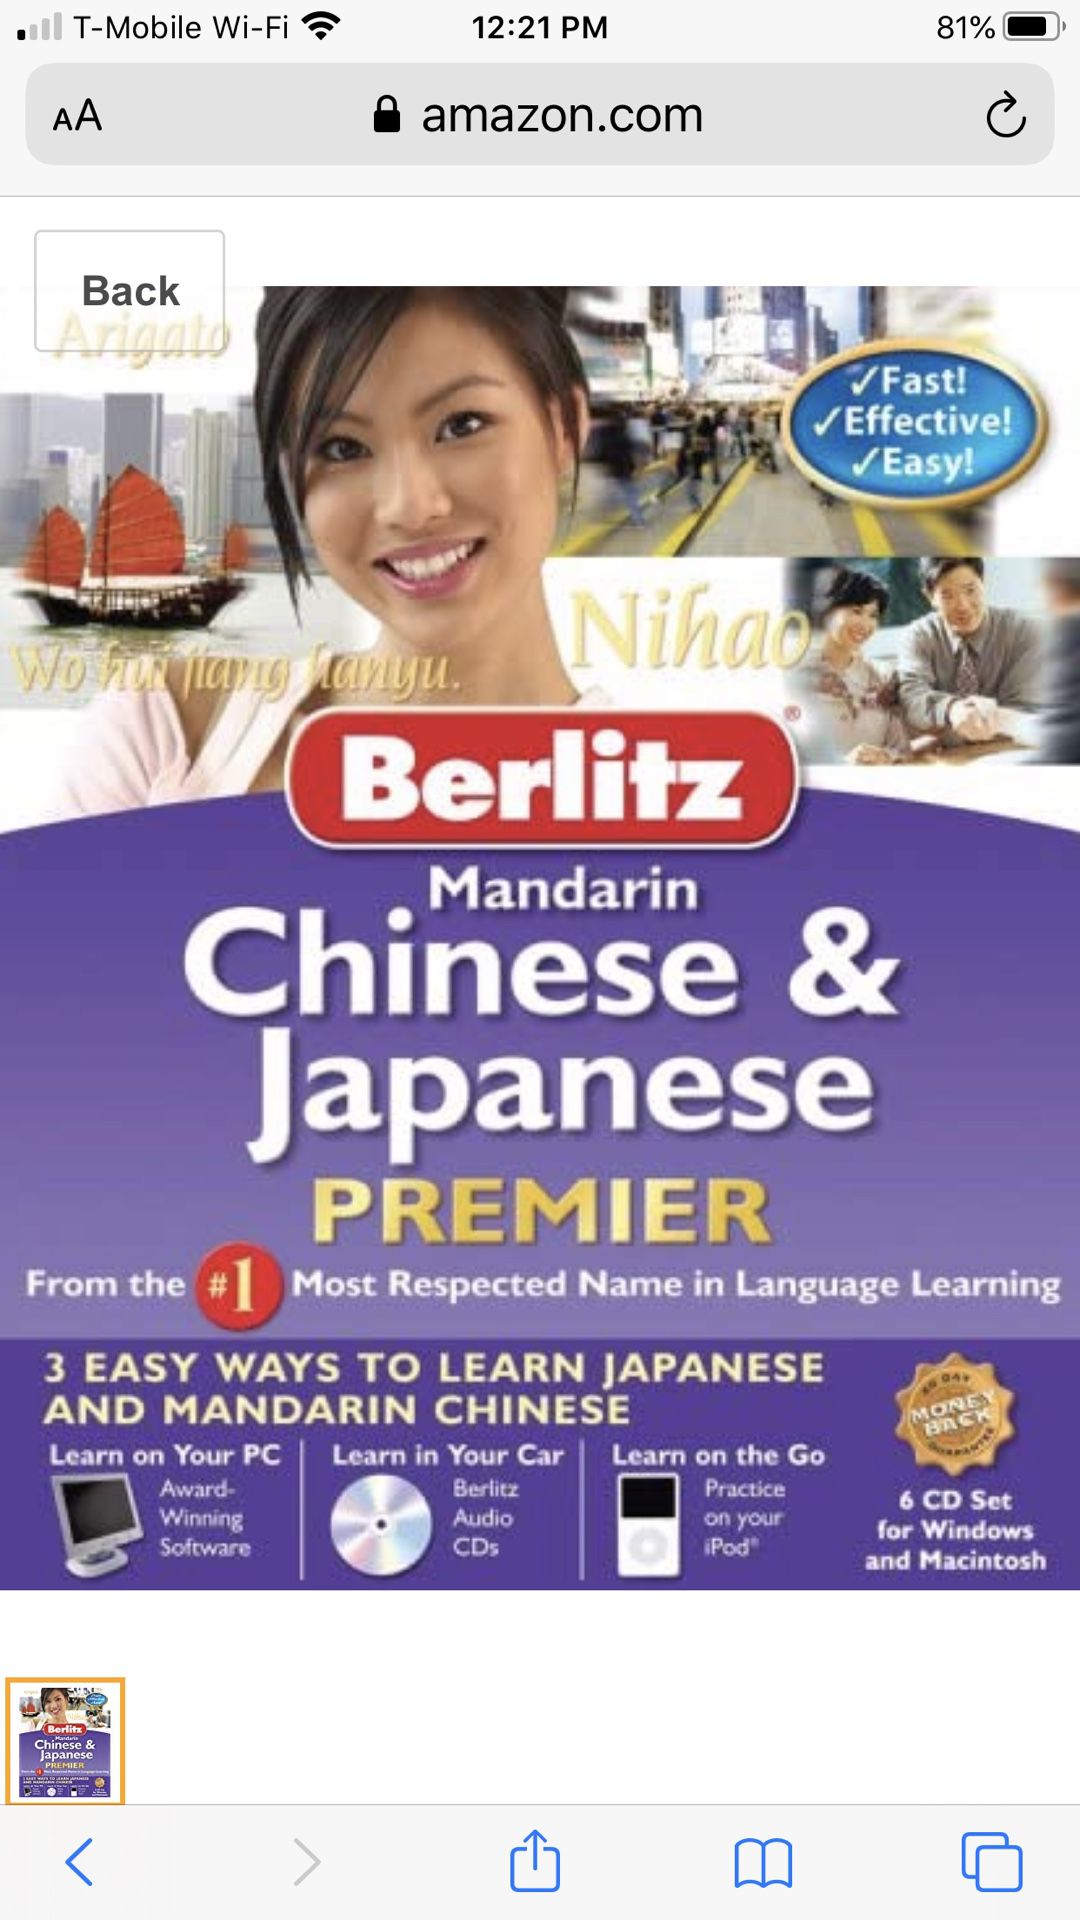 Berlitz Mandarin & Chinese Premier $20